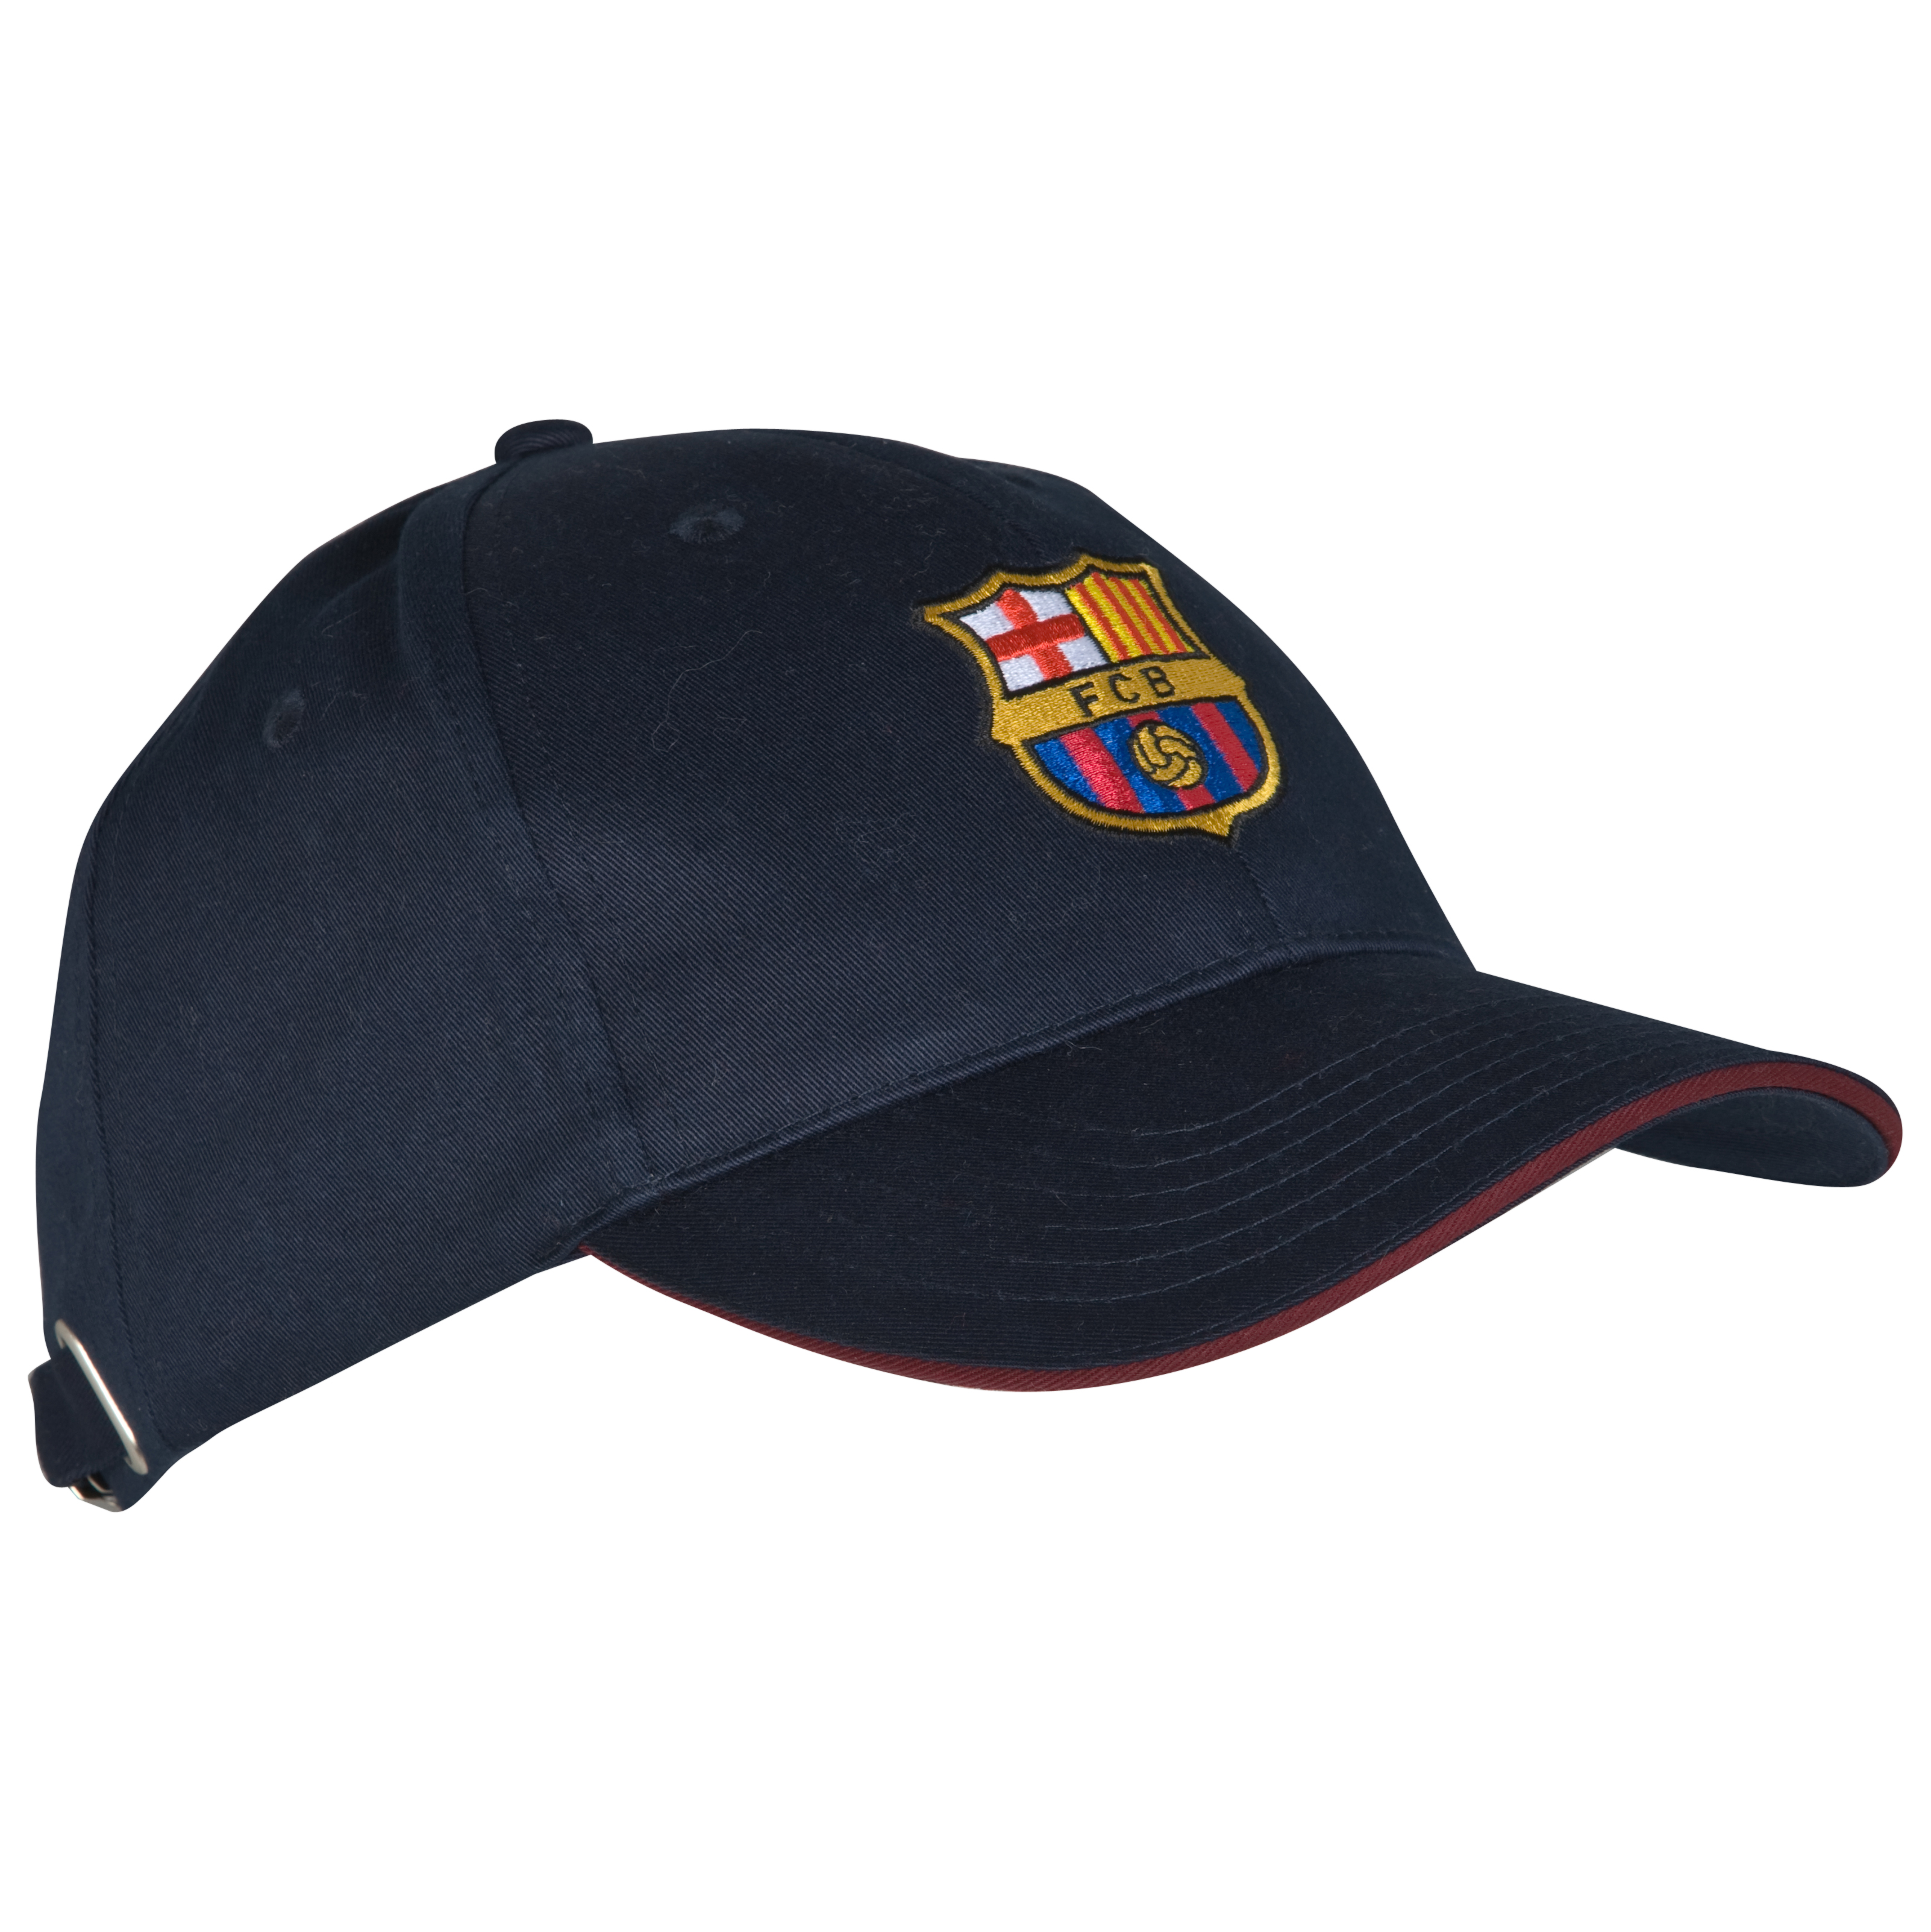 Gorra de la Lliga de Campions FC Barcelona - Blau fosc